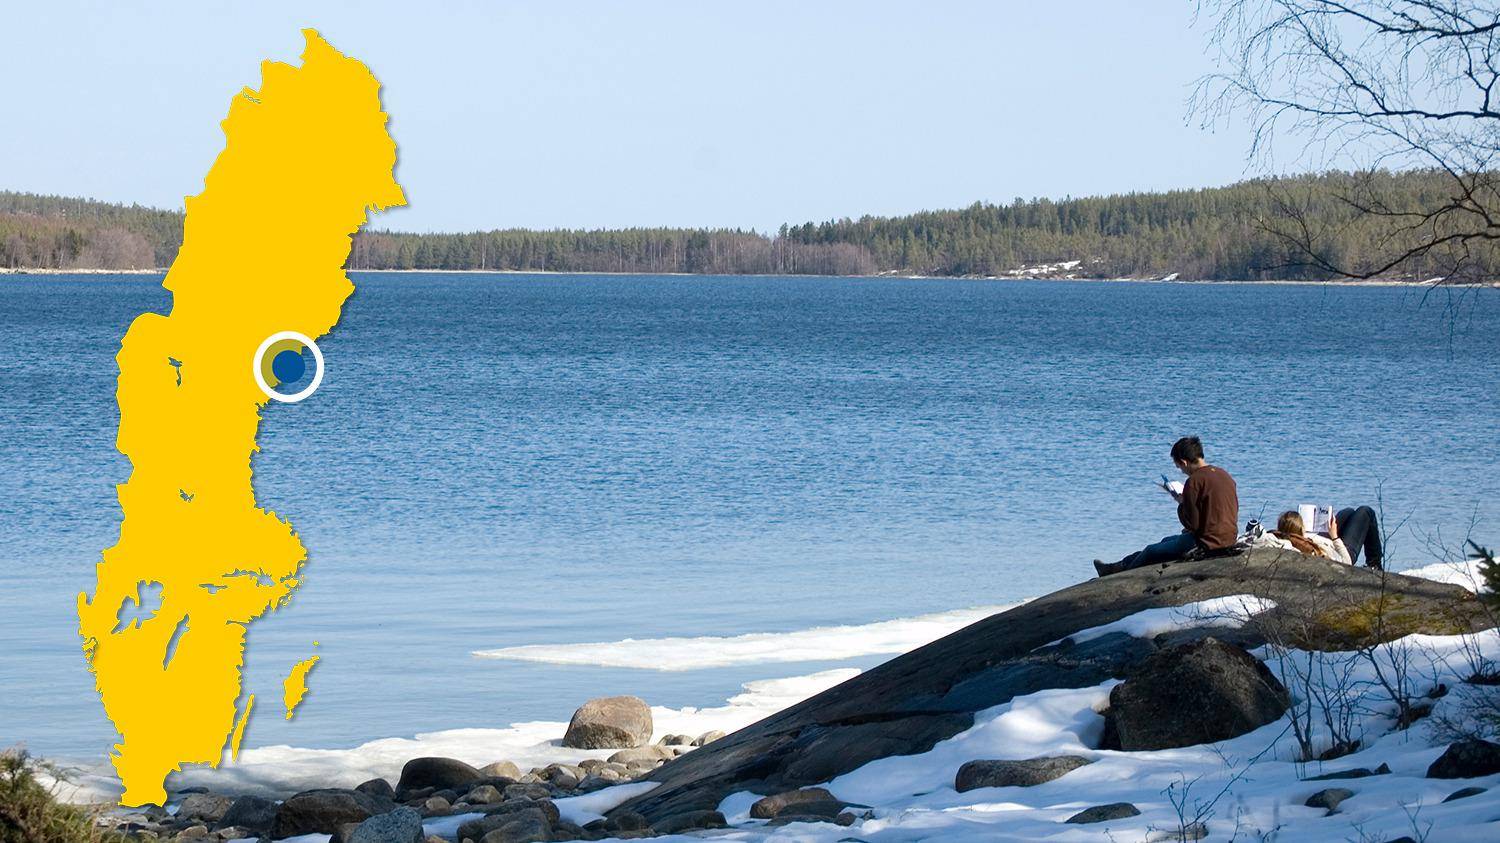 Deux personnes sont assises sur une falaise près de l'eau et lisent des livres au soleil en hiver. Il y a une carte jaune de la Suède avec un point bleu qui indique l'emplacement de Bodviken.